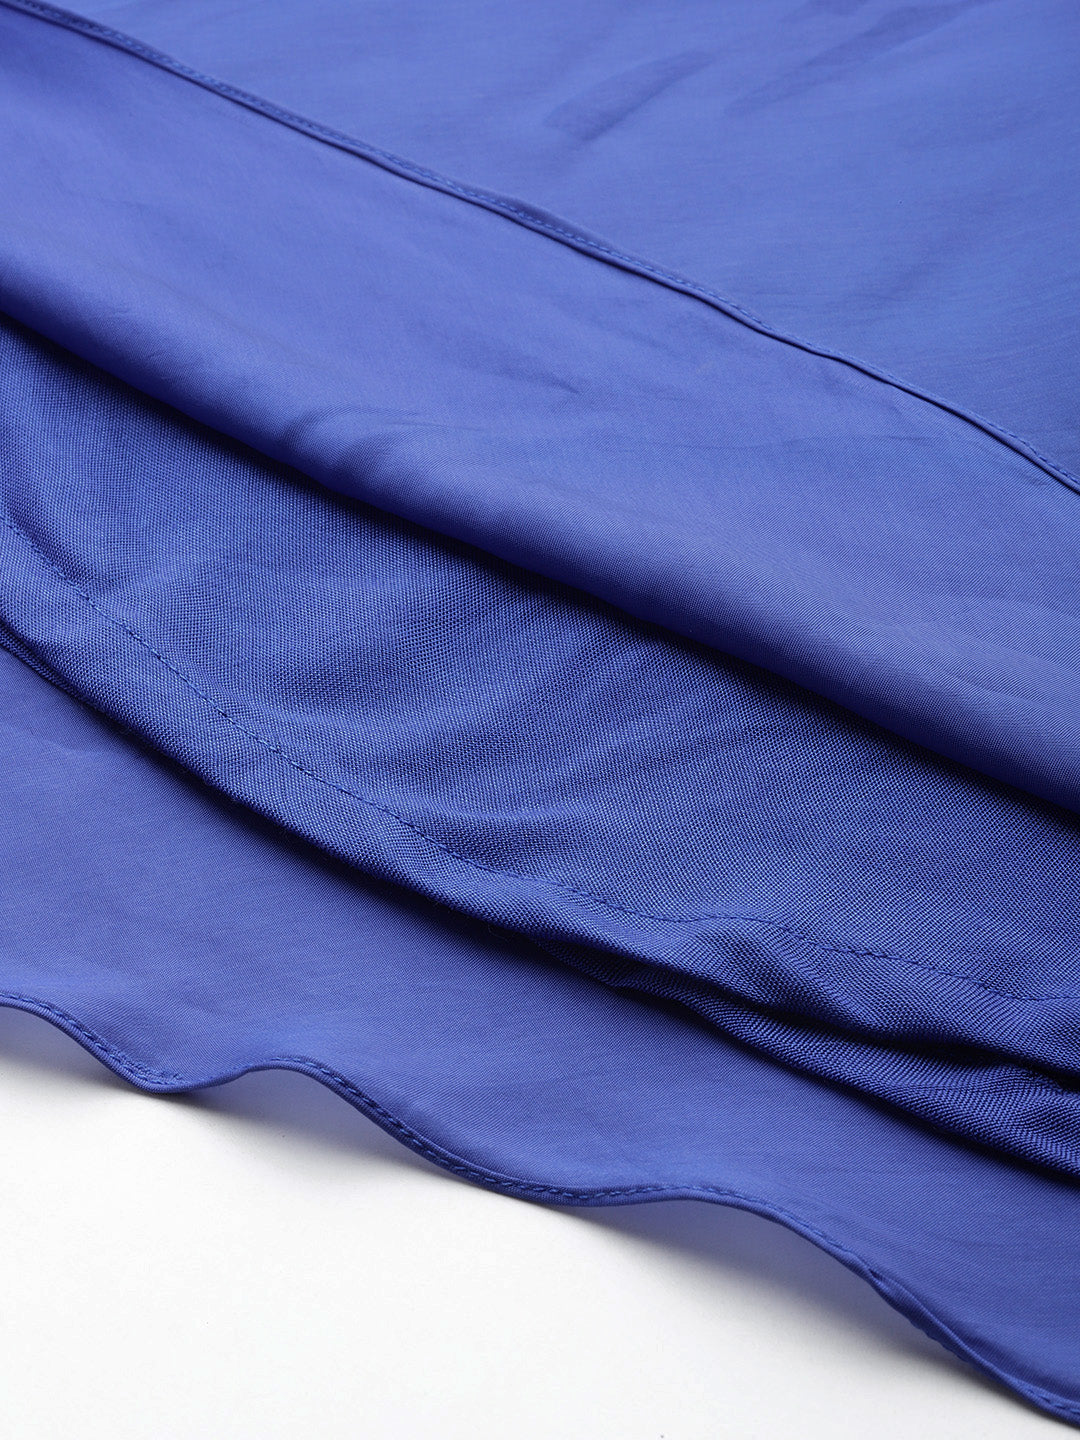 Desginer Blue Polyester Dress